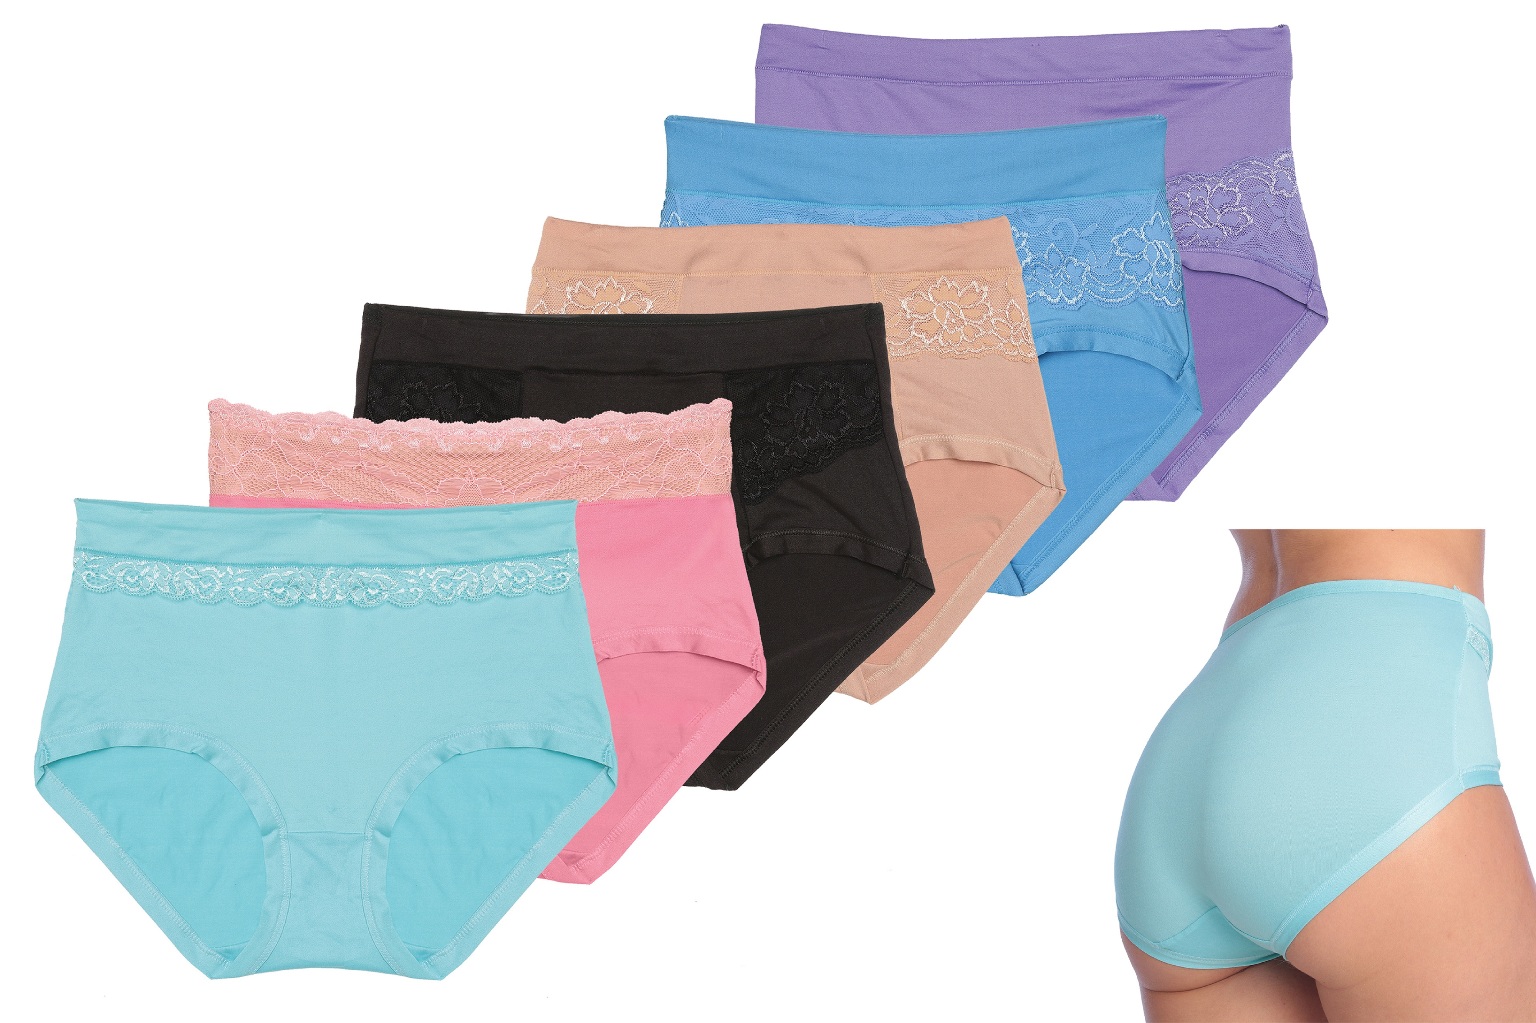 Bulk Women's Underwear - Assorted Colors, Sizes M-XL